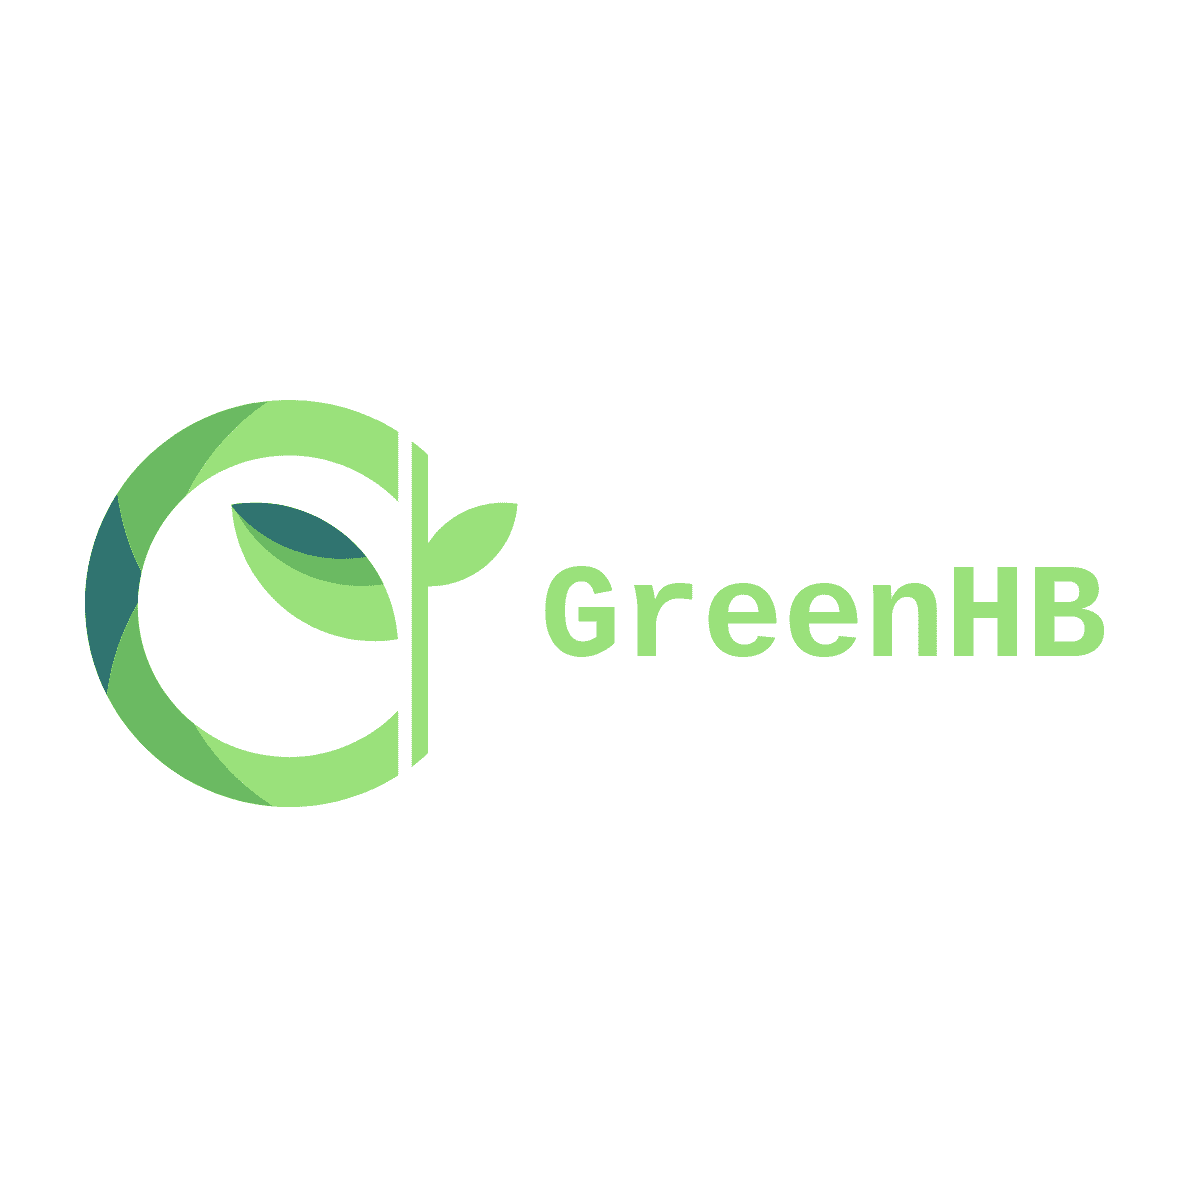 GreenHB